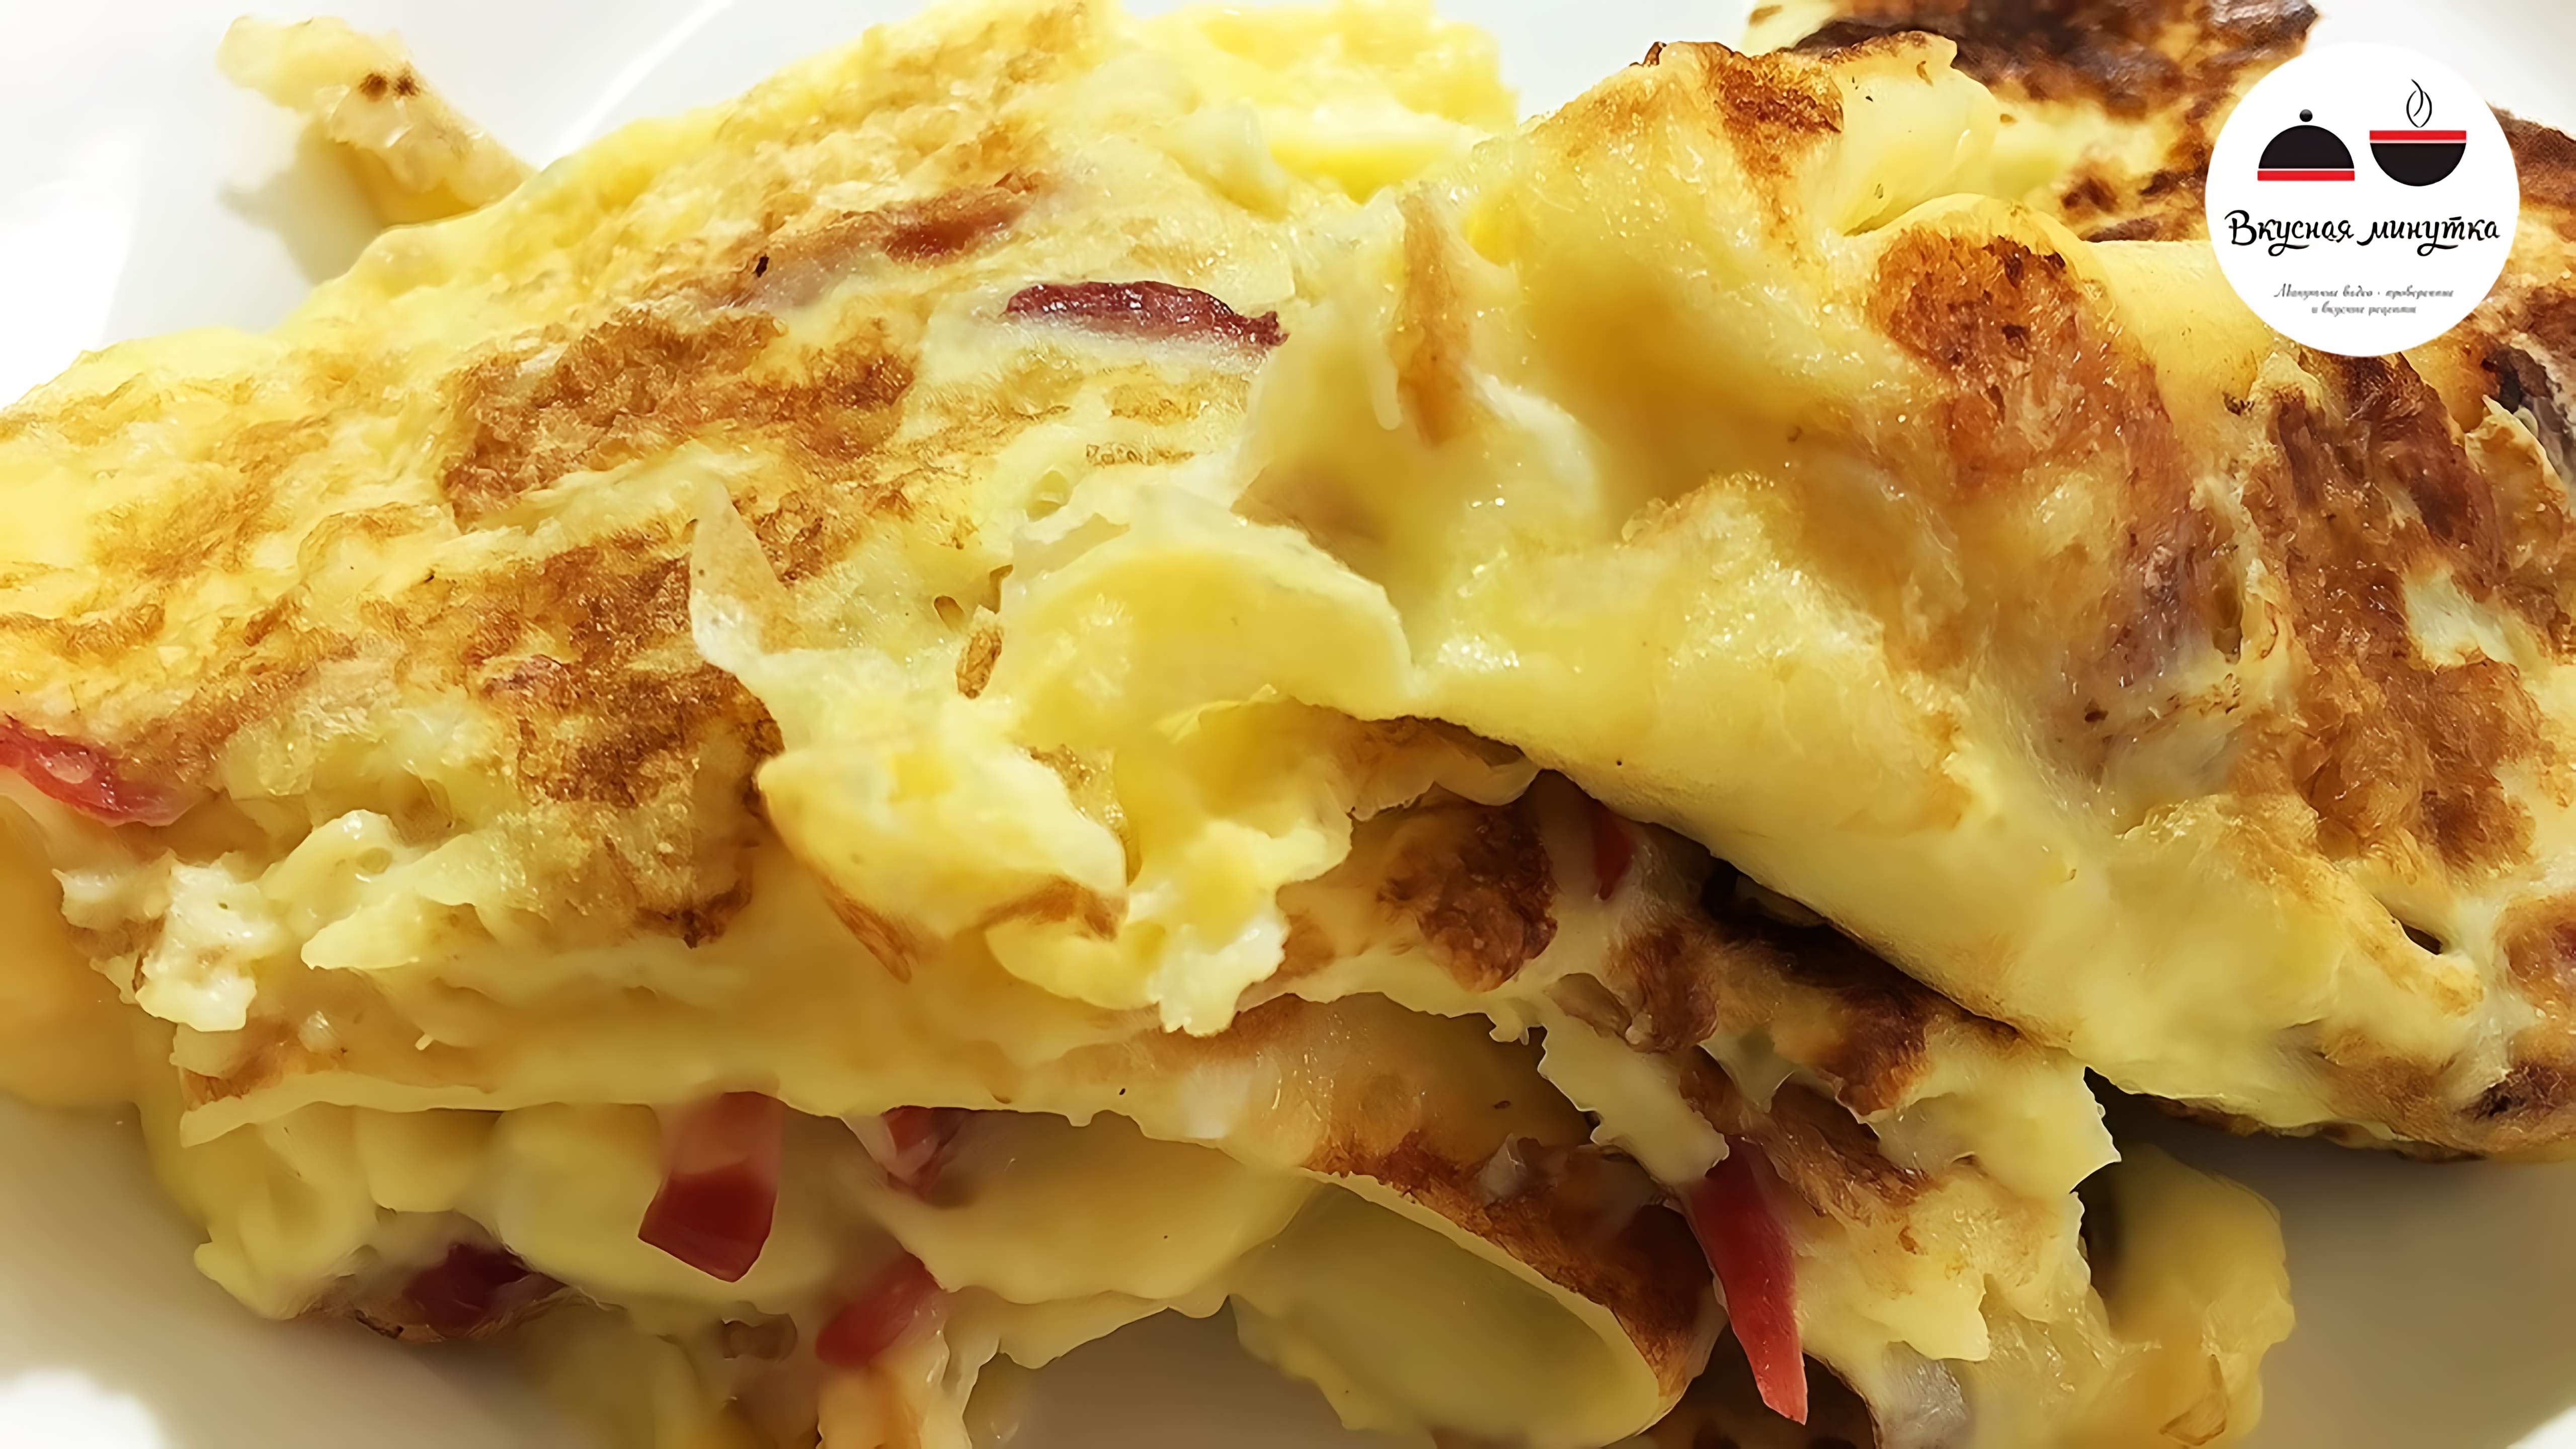 Видео: Как приготовить омлет  Омлет на сковороде  Omelette on a frying pan